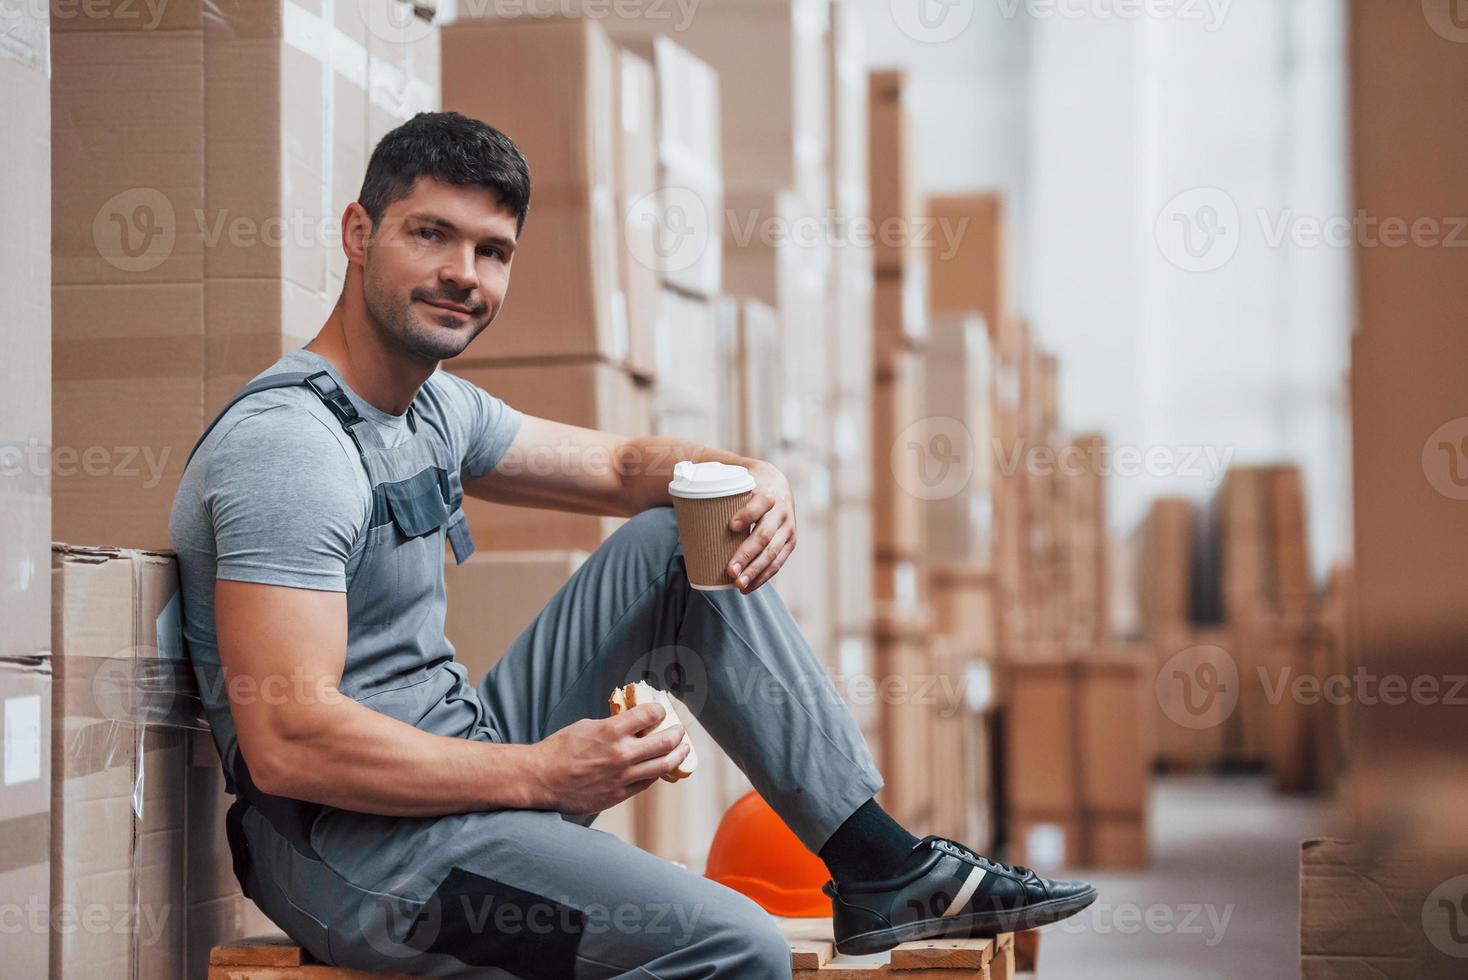 trabalhador de armazenamento senta-se e faz uma pausa. come sanduíche e bebe café foto